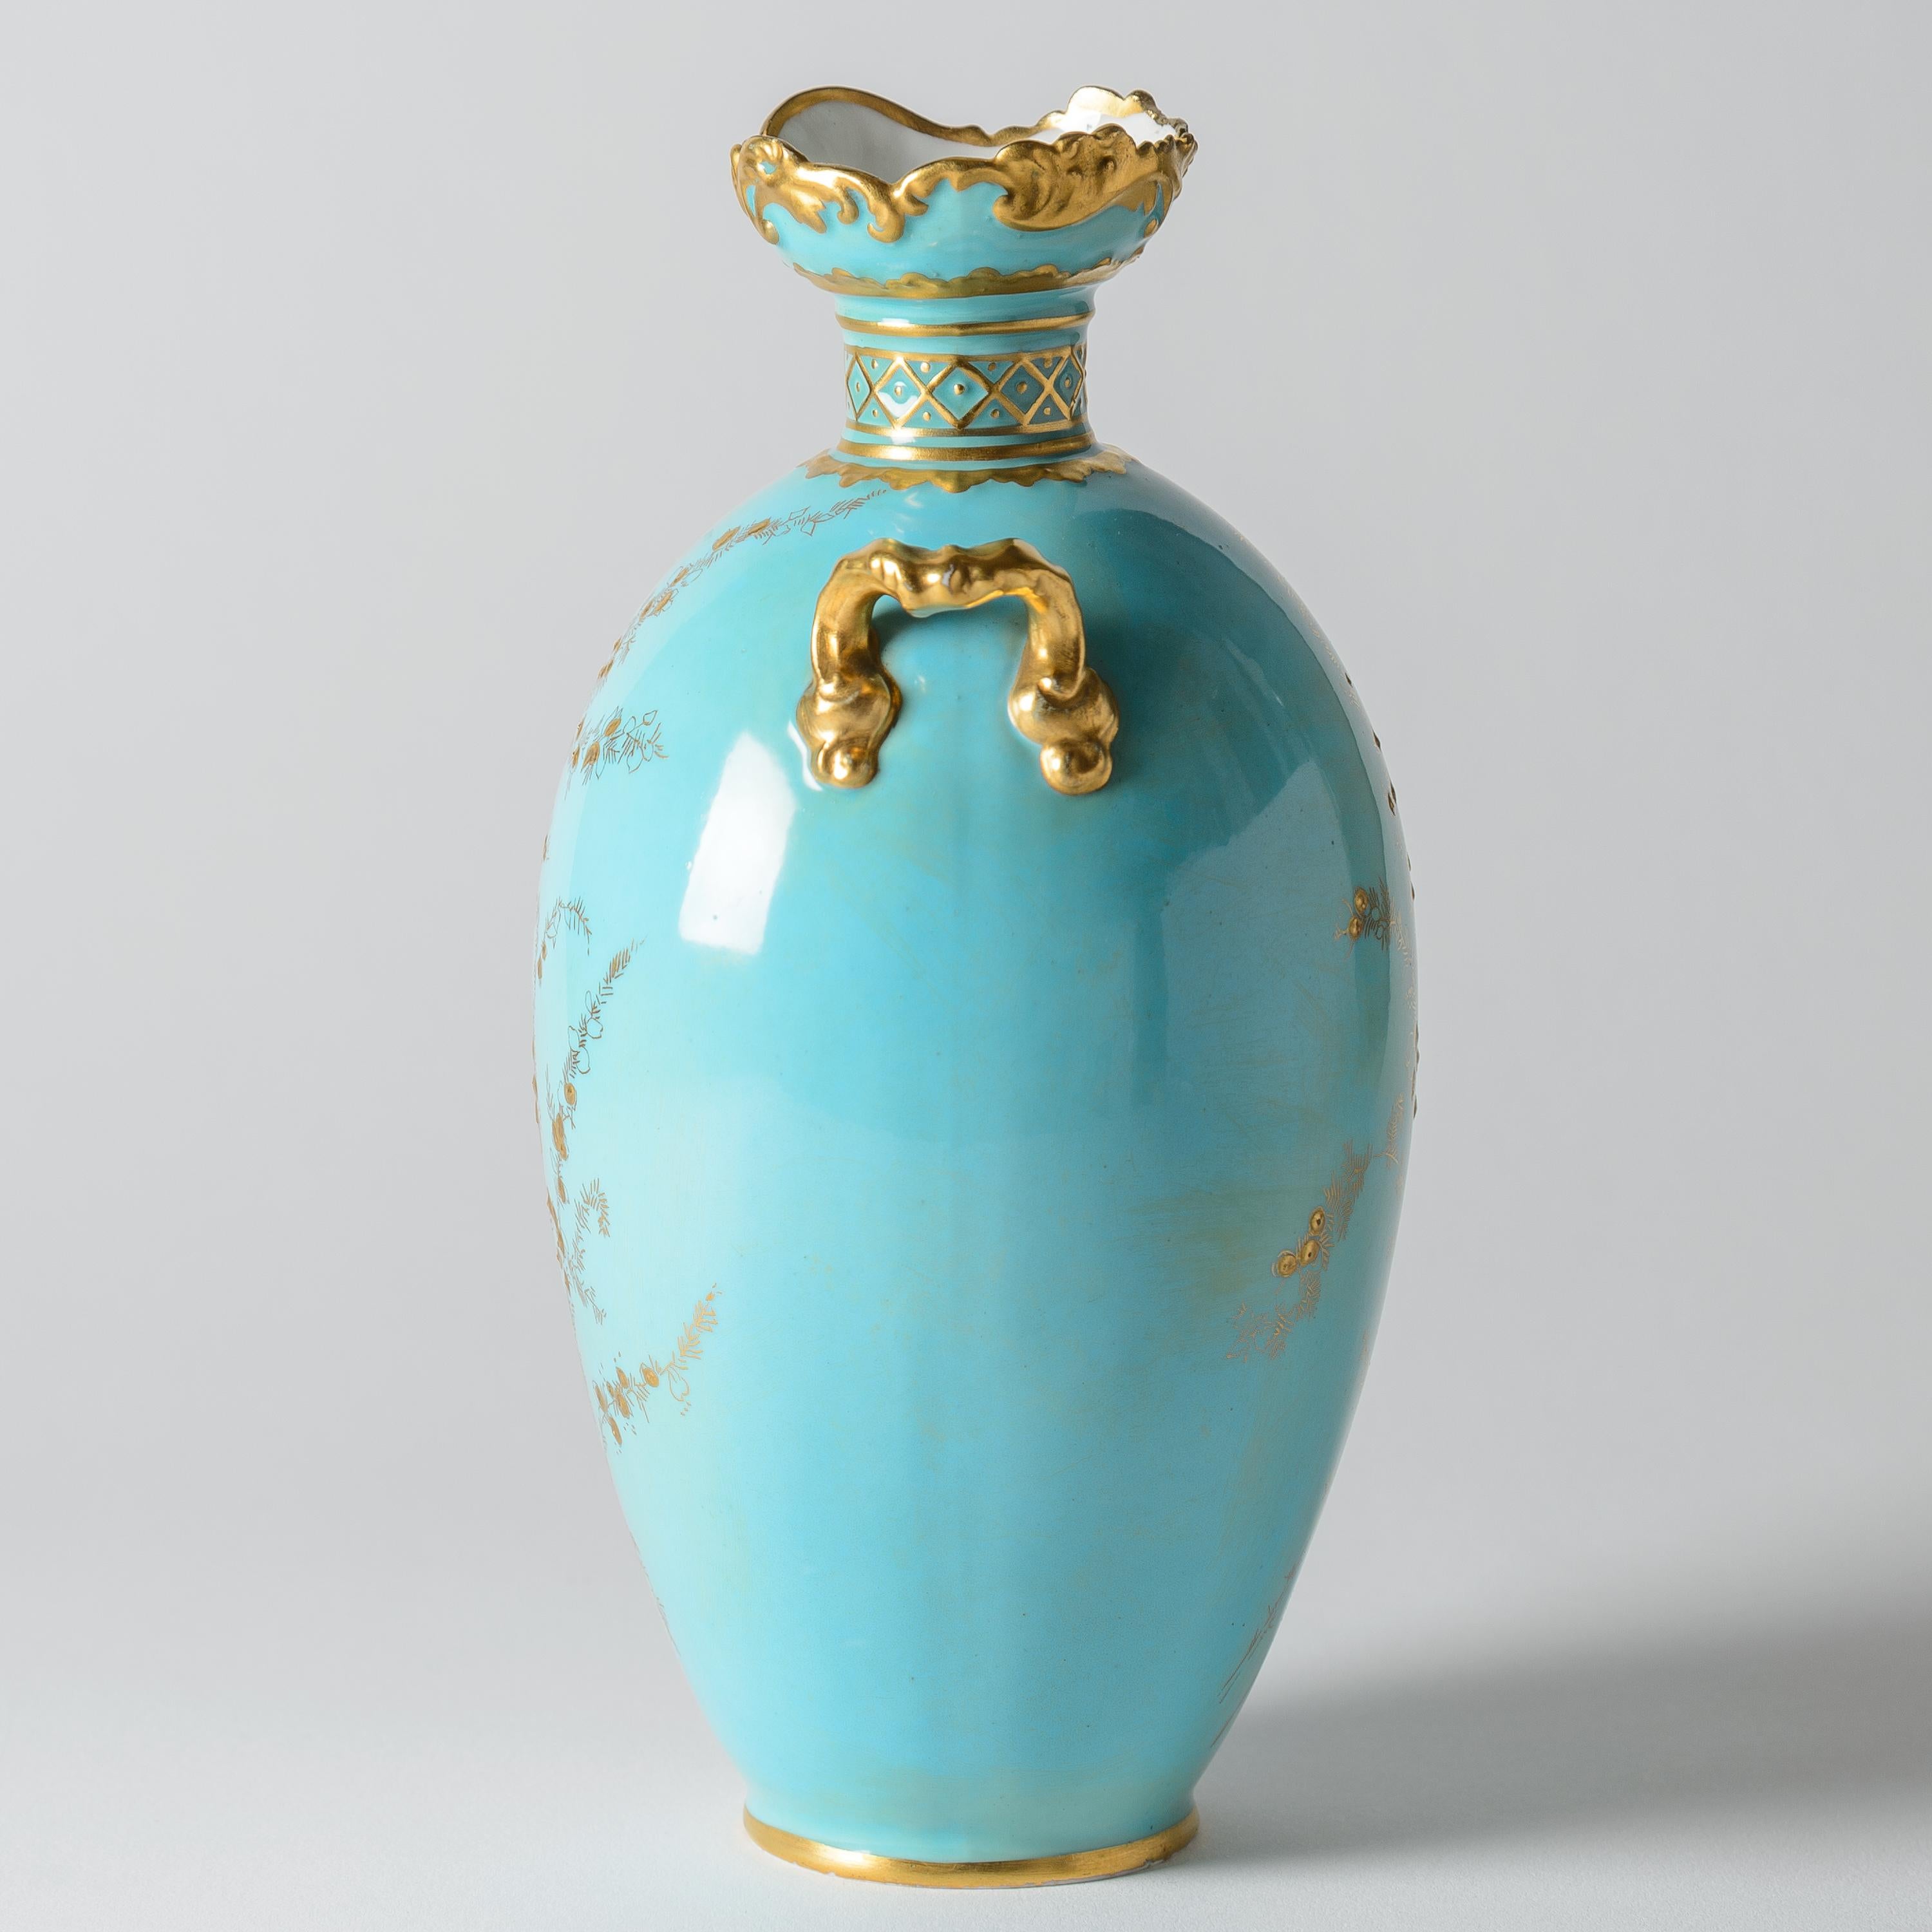 Un vase turquoise vibrant et à pâte levée dorée, réalisé par l'une des plus belles manufactures de porcelaine d'Angleterre : Royal Crown Derby. Les poignées sont joliment détaillées et le bord supérieur est légèrement volanté. Vendue par l'un des